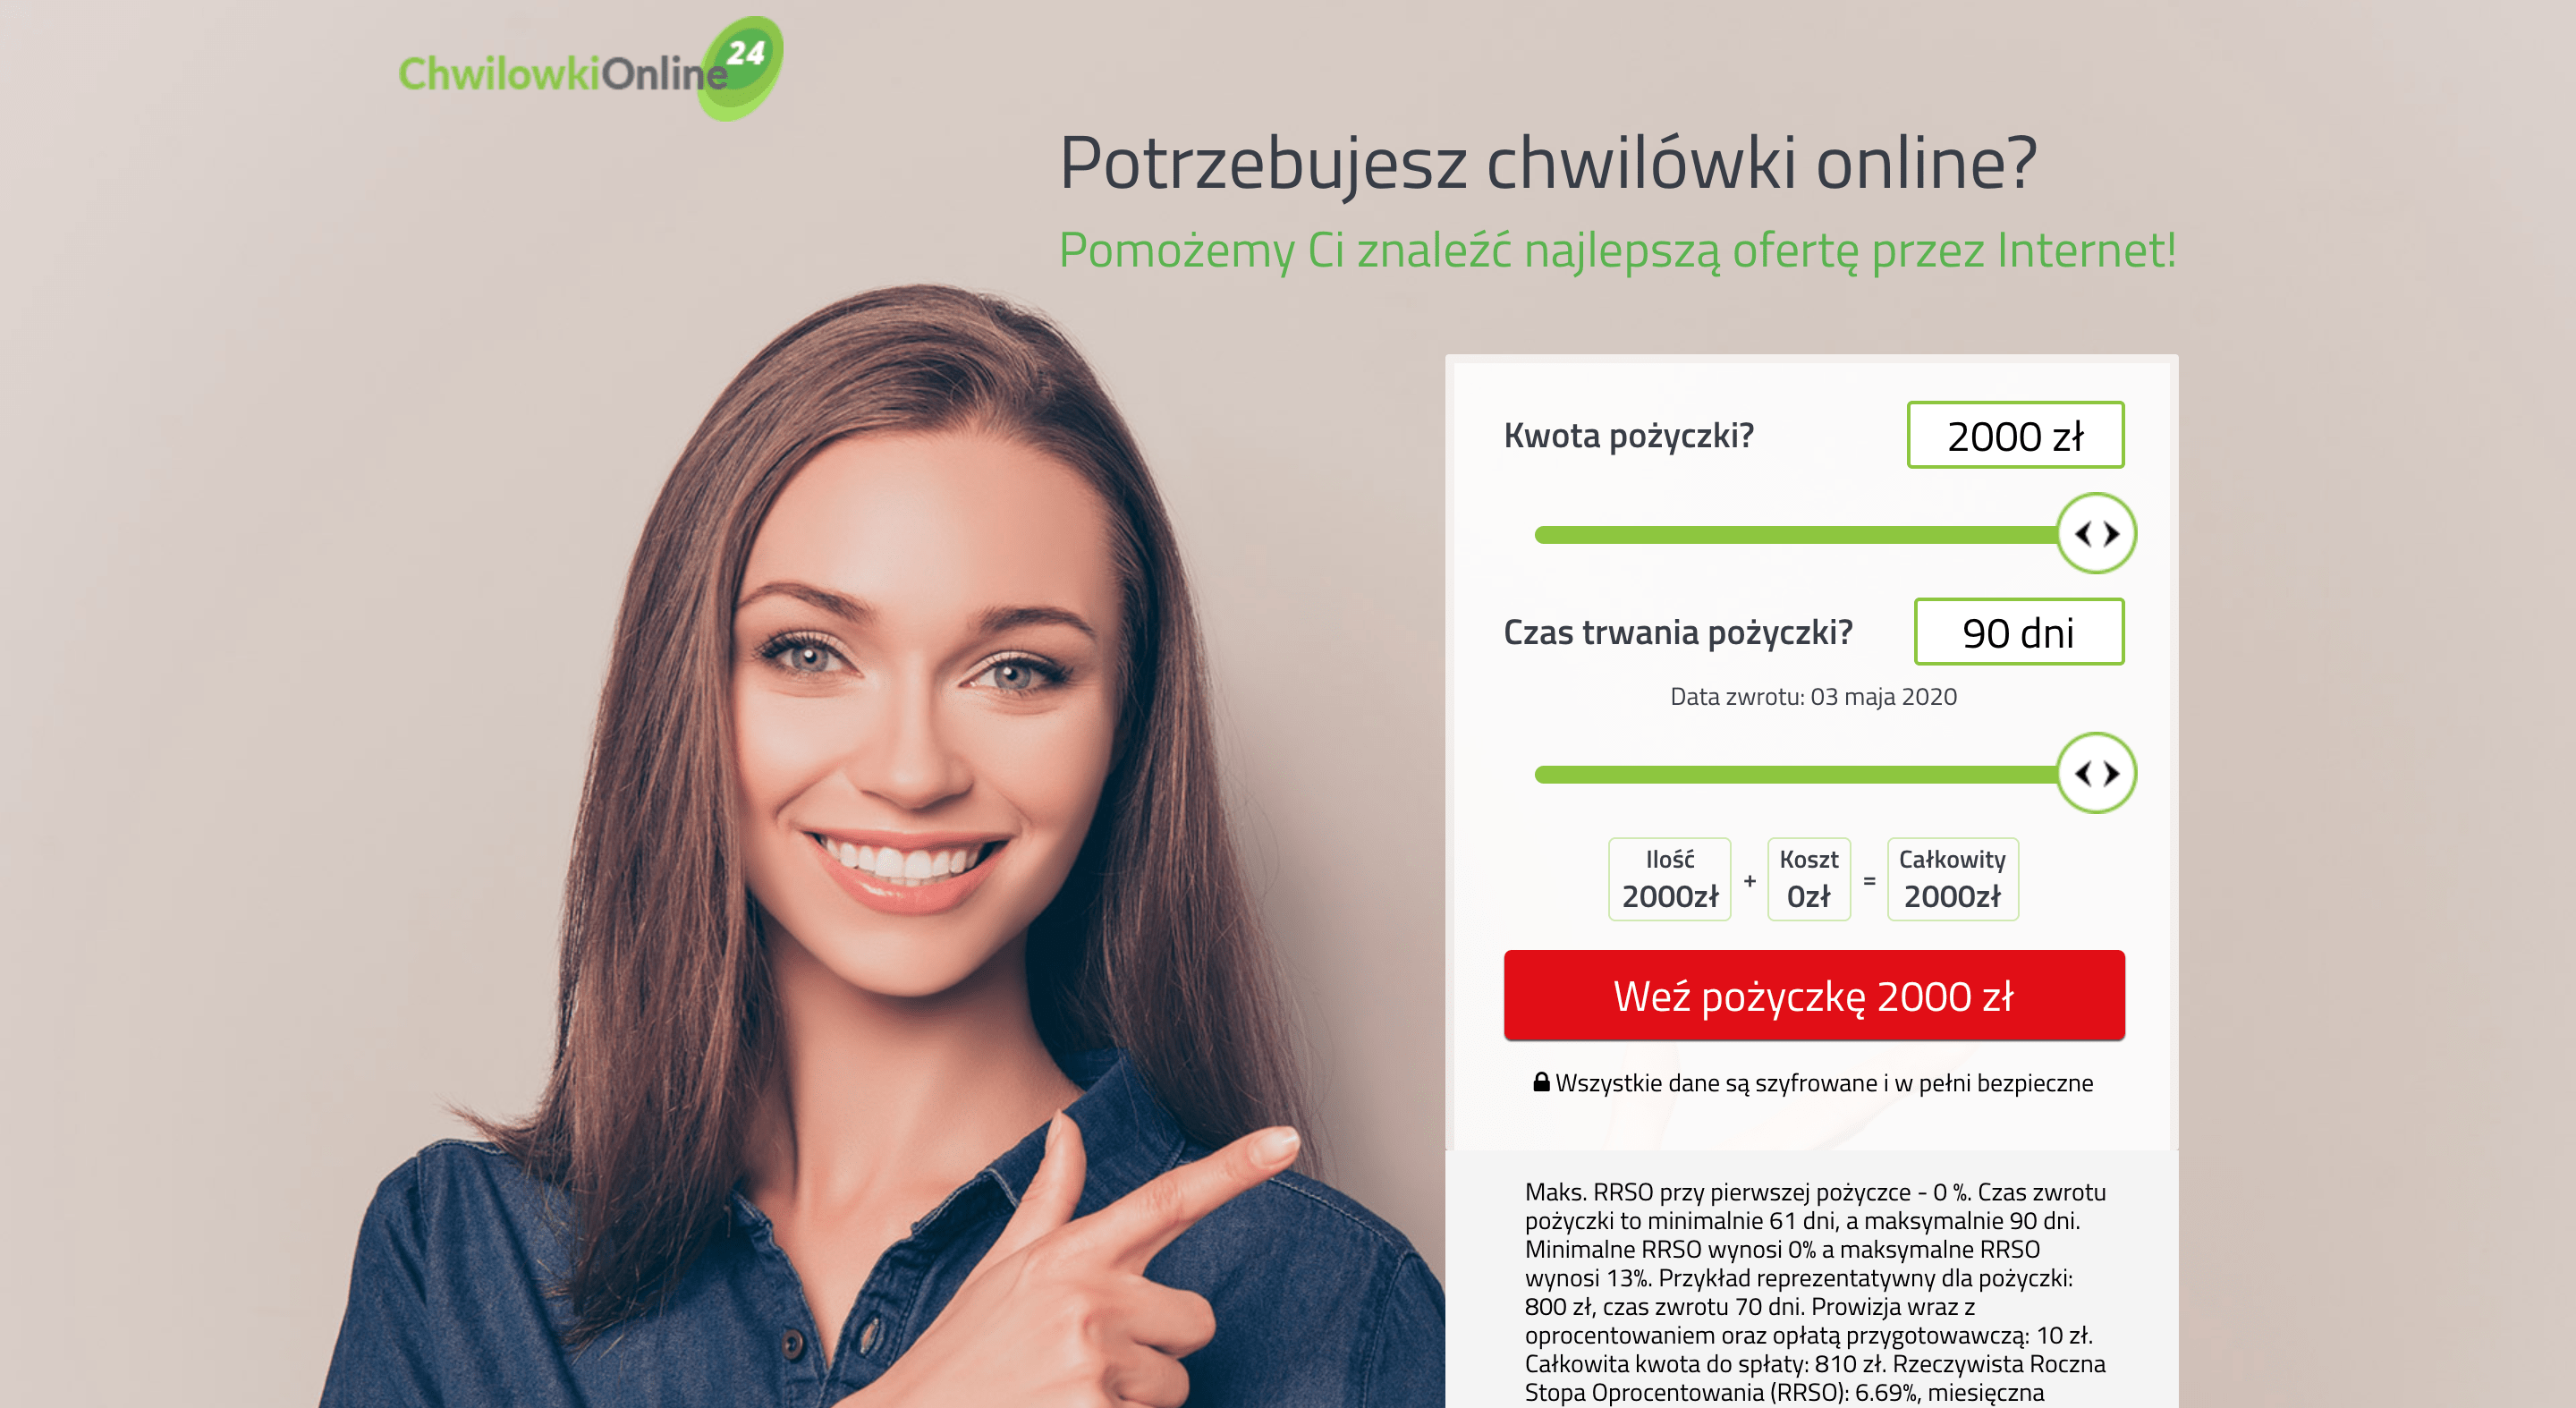 Chwilowkionline24 - Pożyczki do 2 000 zł.